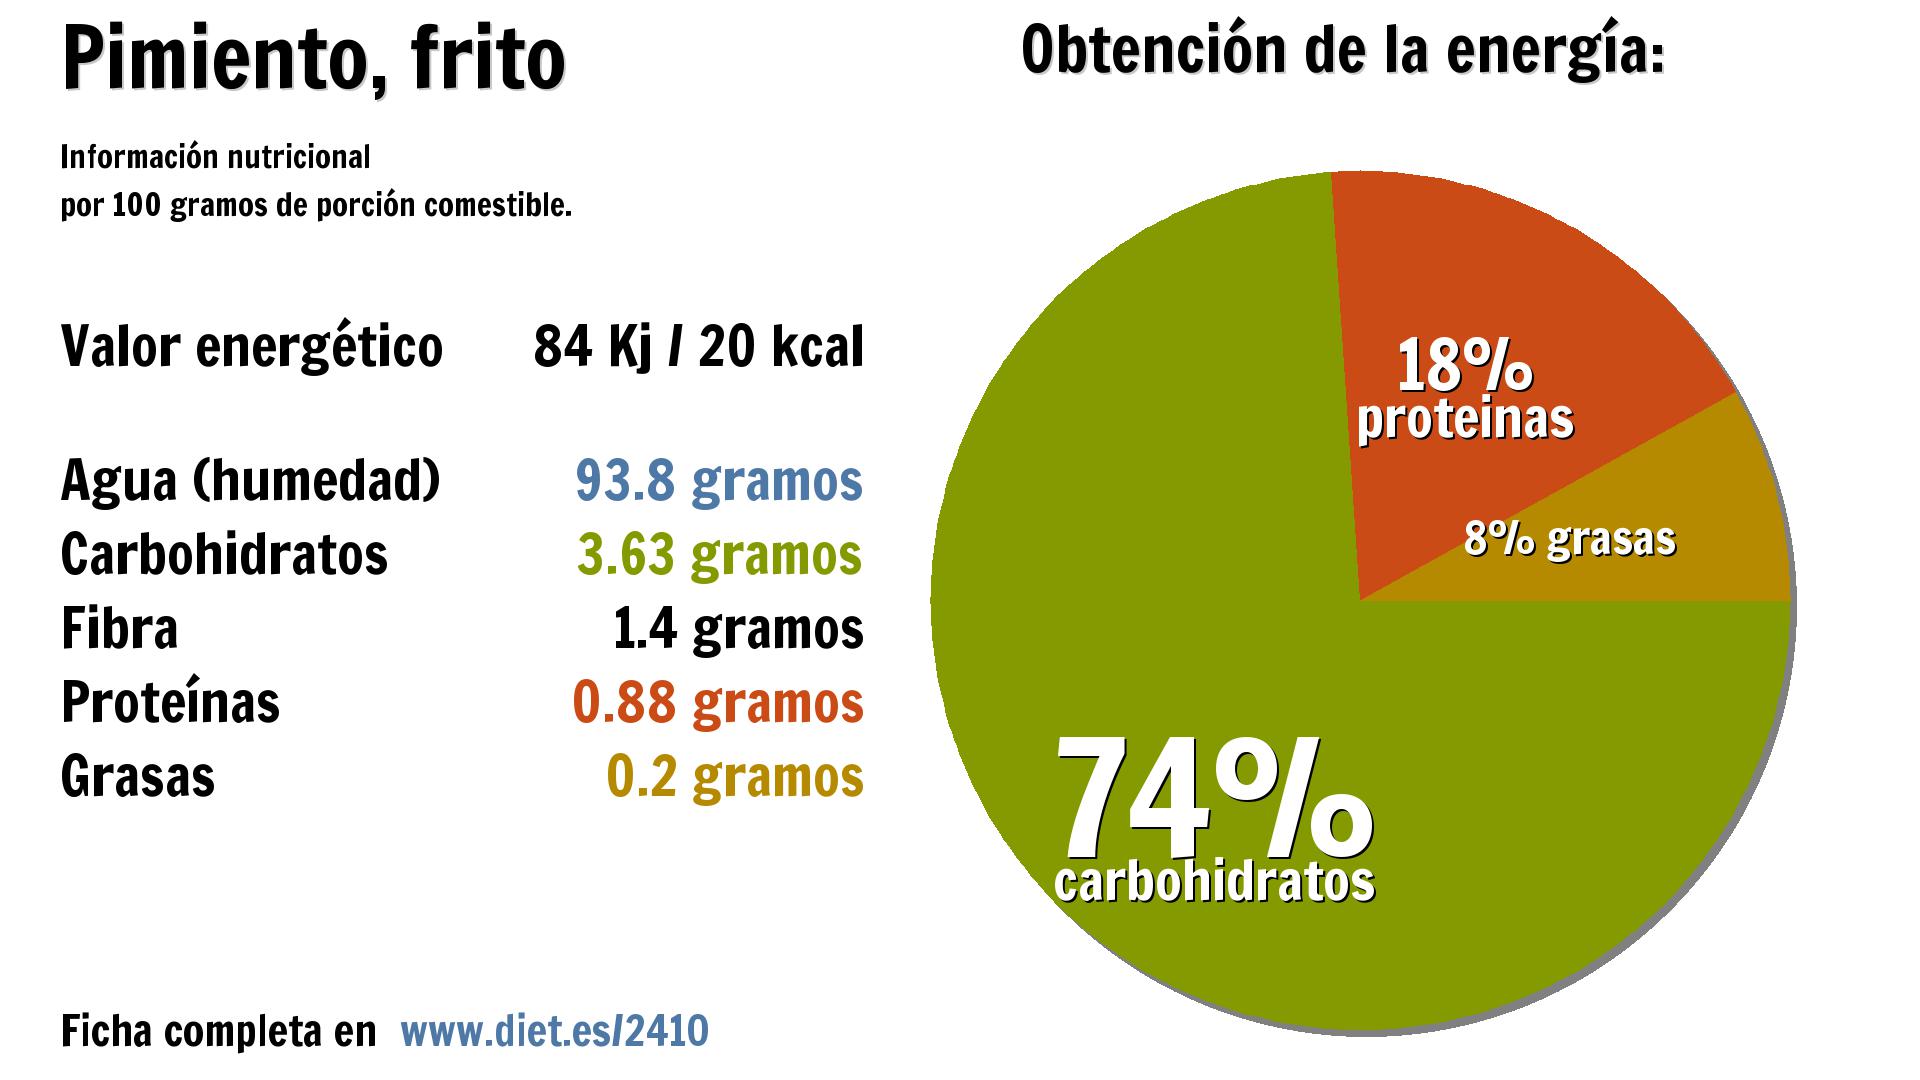 Pimiento, frito: agua 94 g., energía 84 Kj, carbohidratos 4 g., fibra 1 g. y proteínas 1 g.